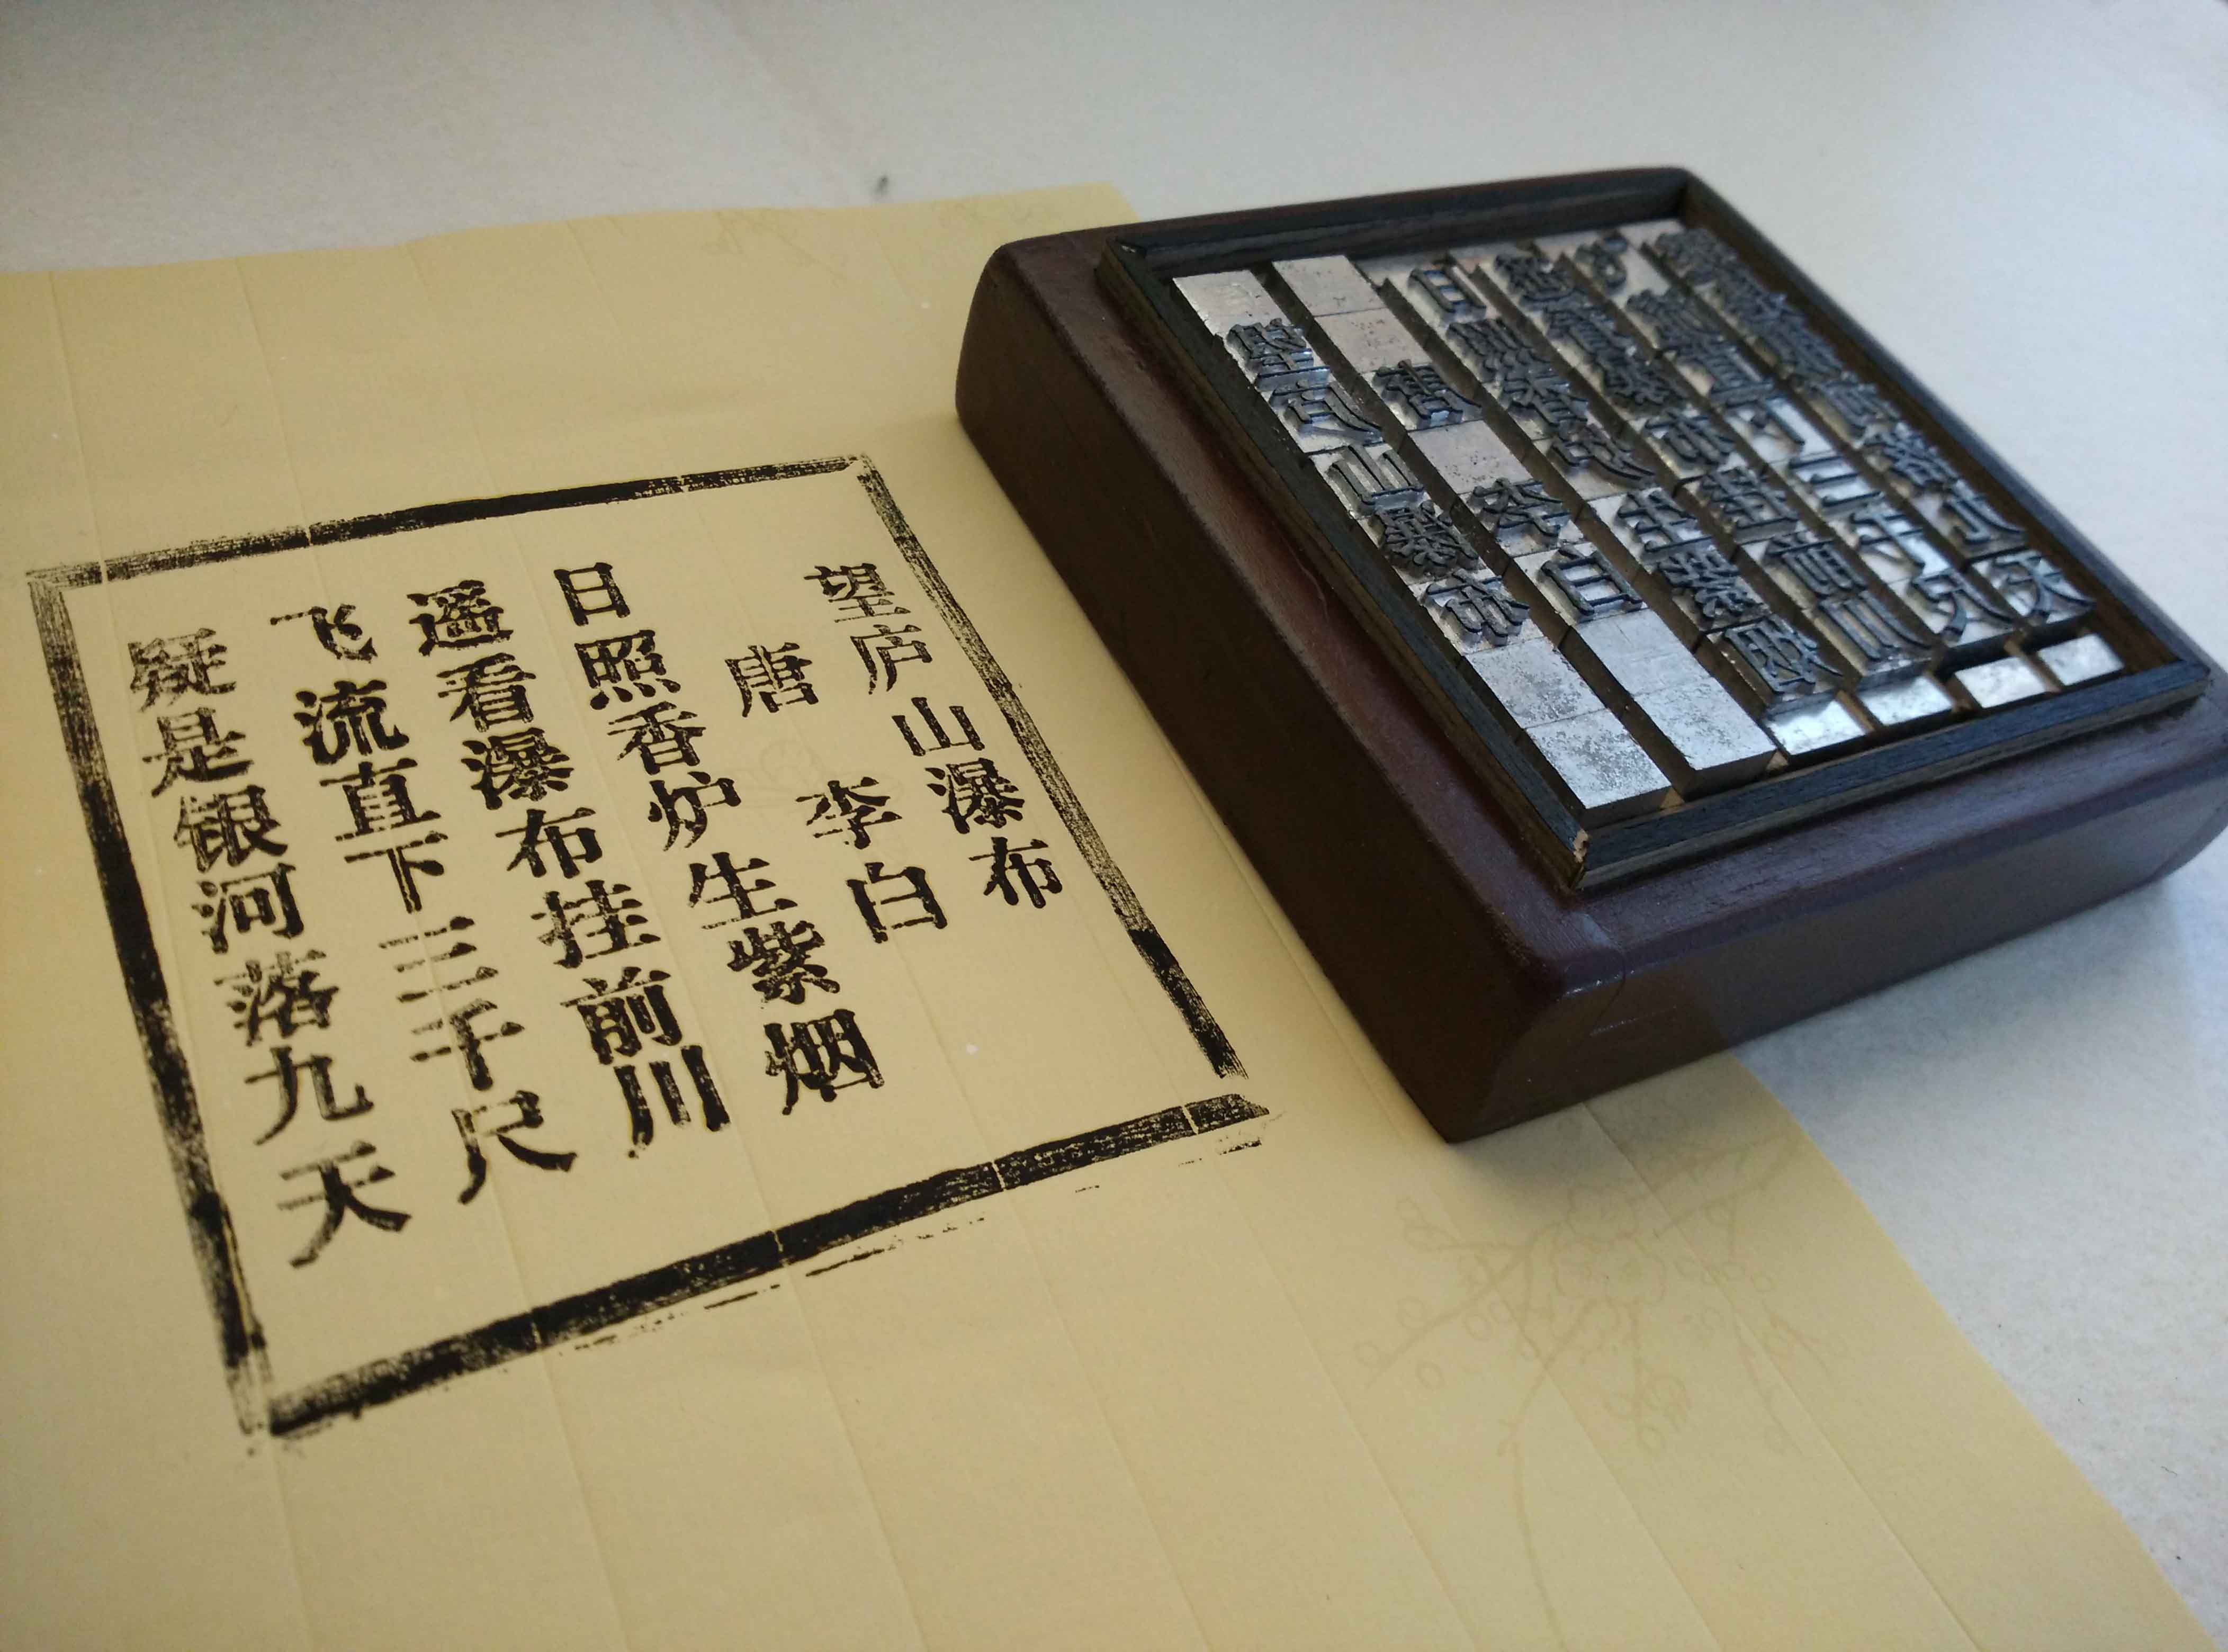 铅活字印刷 国学教育装备 唐诗儿童体验 全套印刷工具